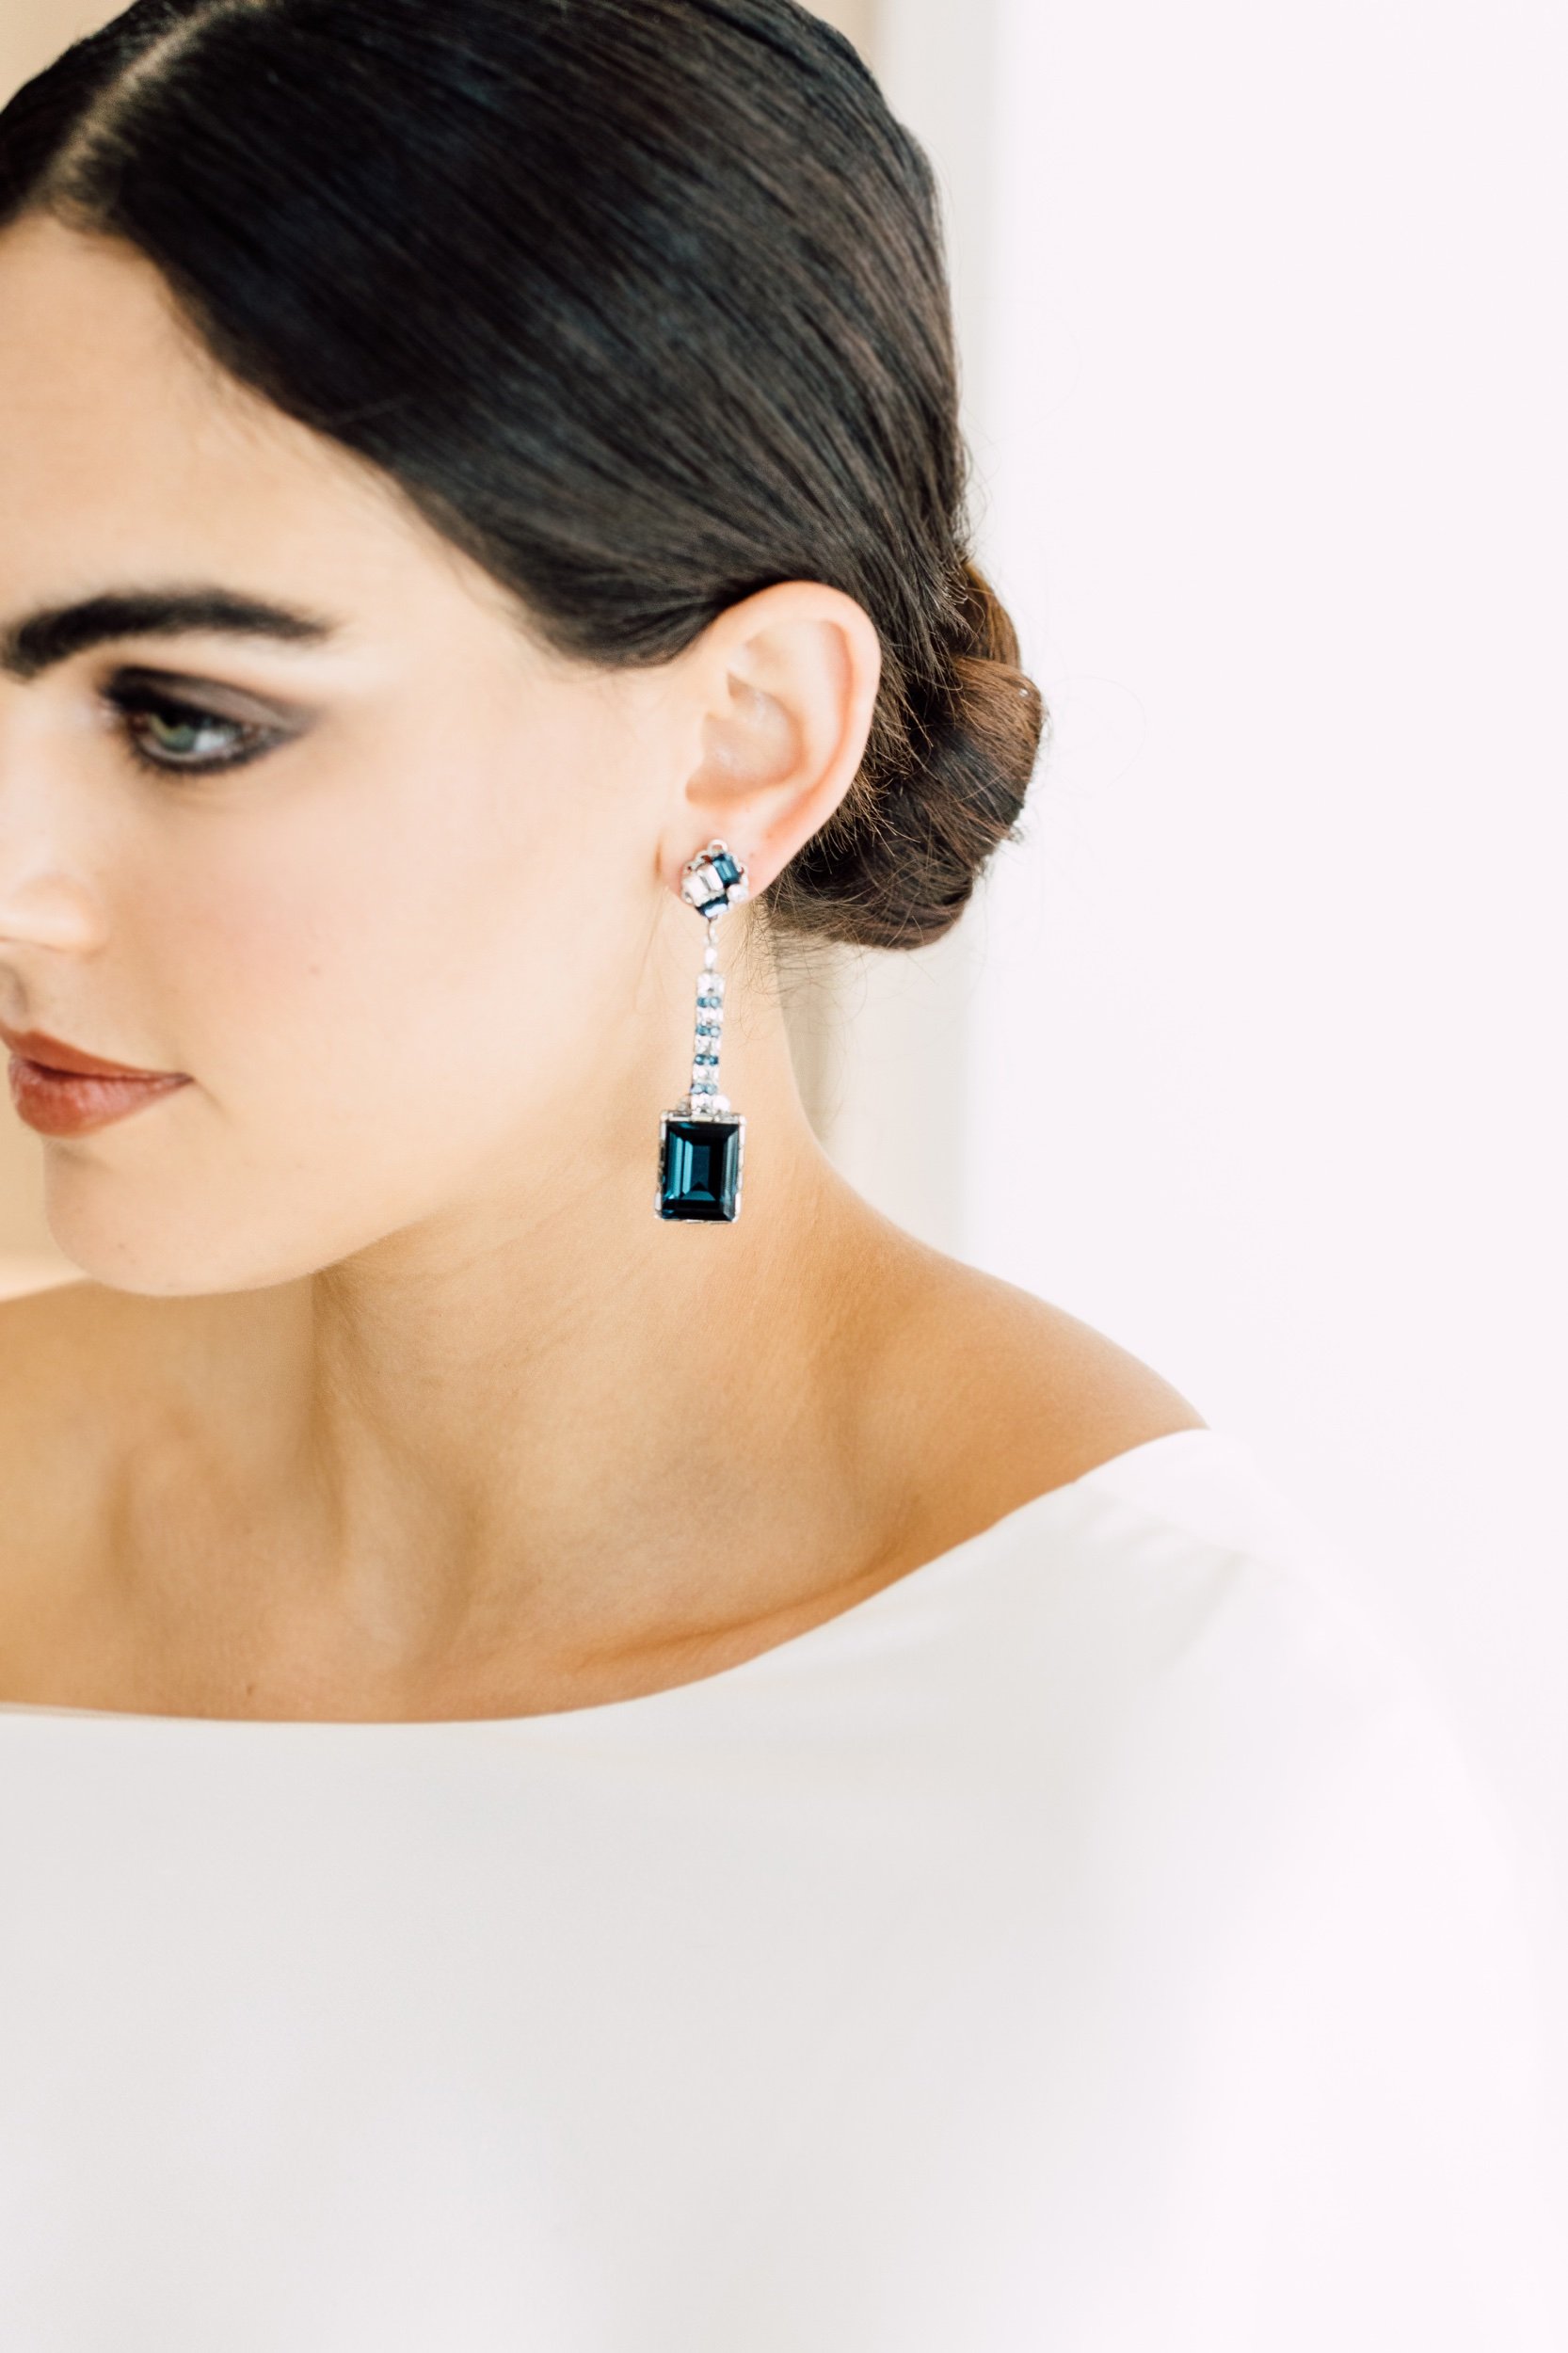 Pearl Earrings Wedding Jewelry, Bridal Earrings, Swarovski , Lamor  Swarovski Crystal and Pearl Bridal Earrings - Etsy | Pearl earrings wedding,  Bridal earrings pearl, Bridal earrings